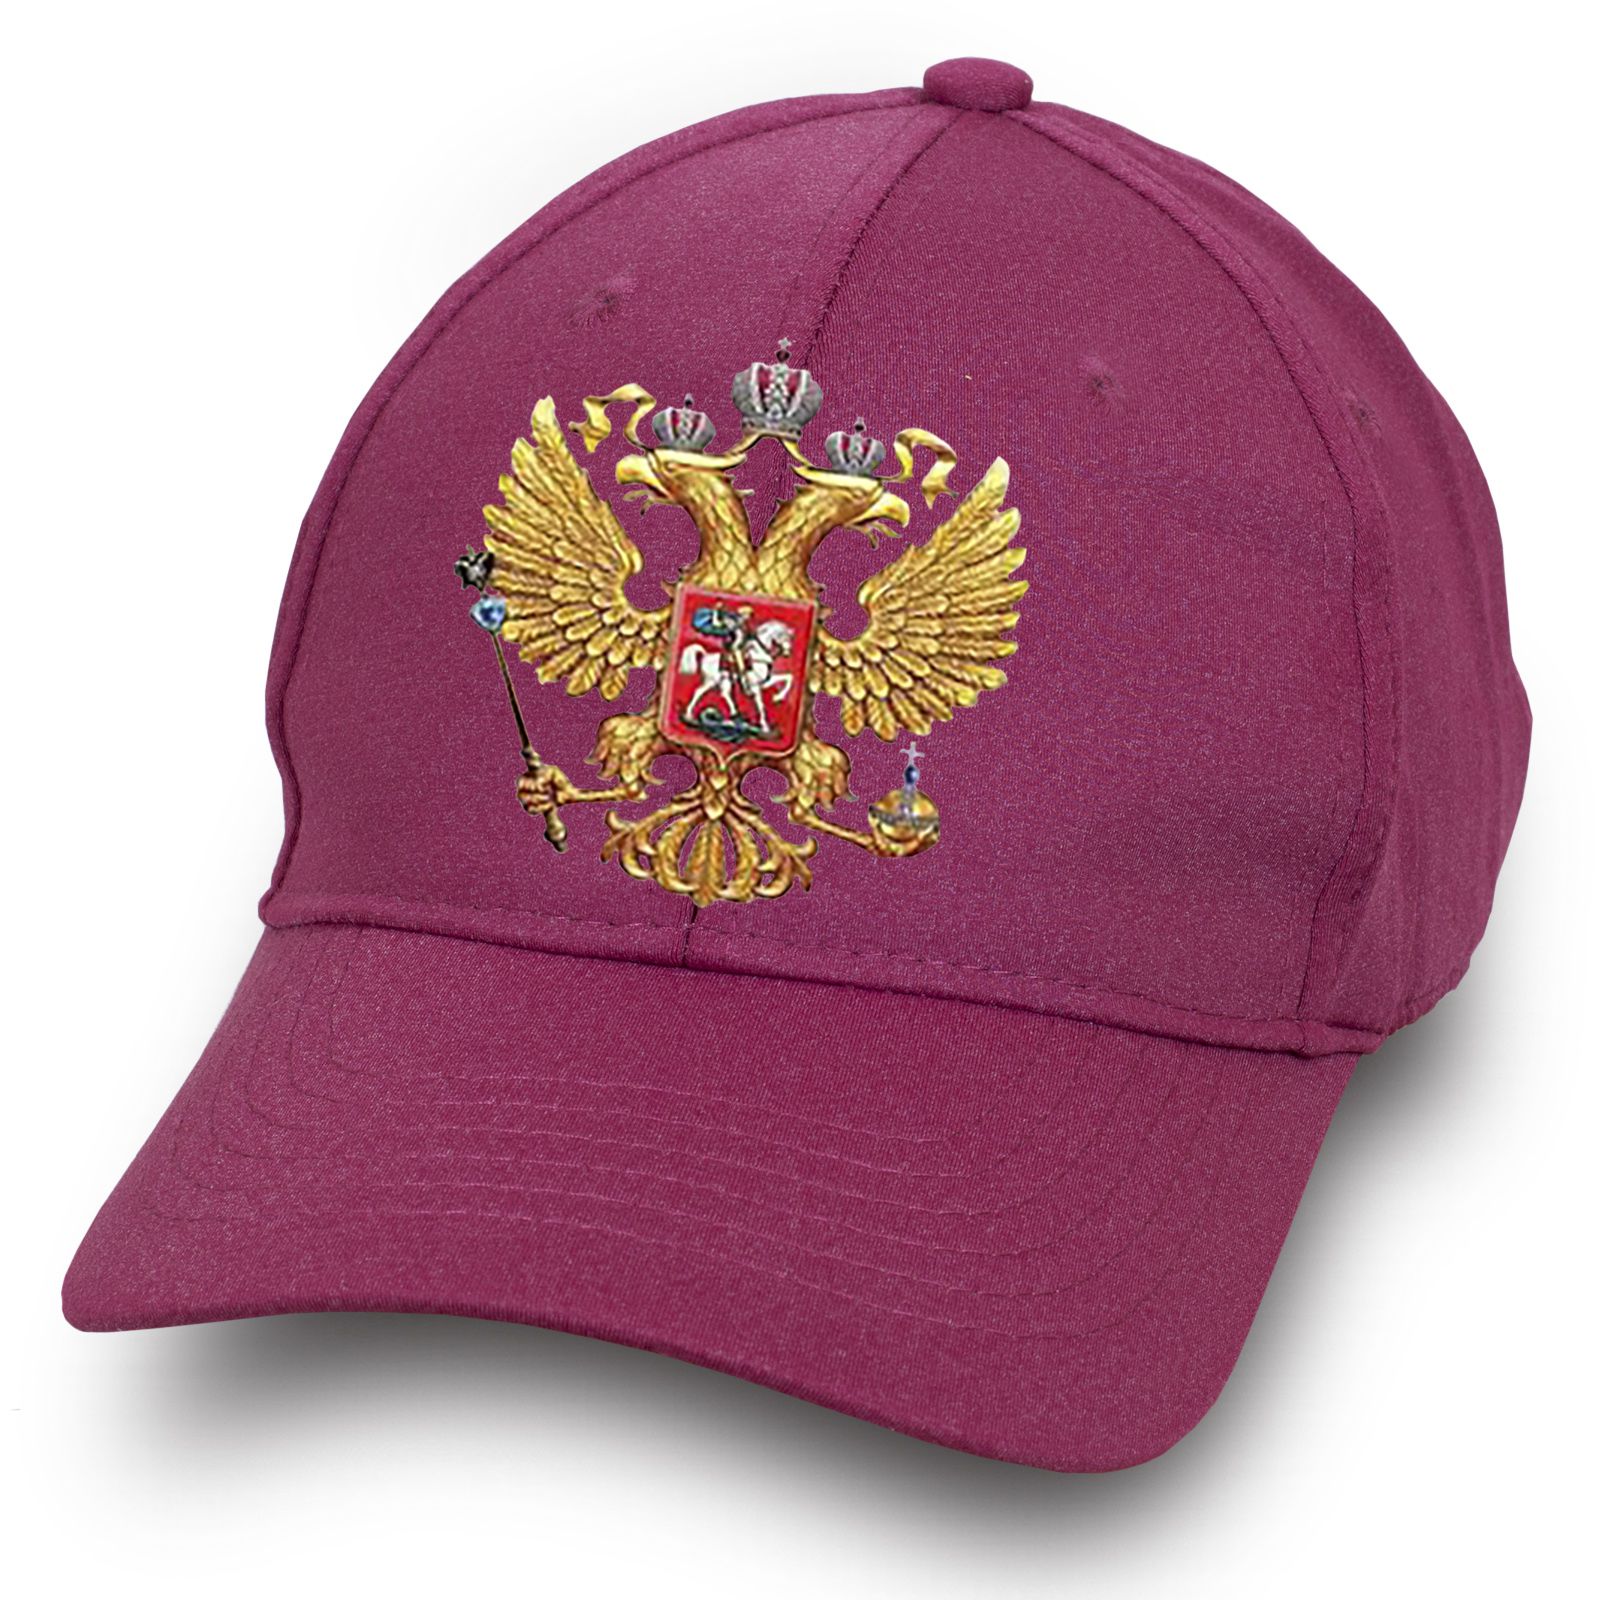 Заказать кепку с российским гербом по низкой цене